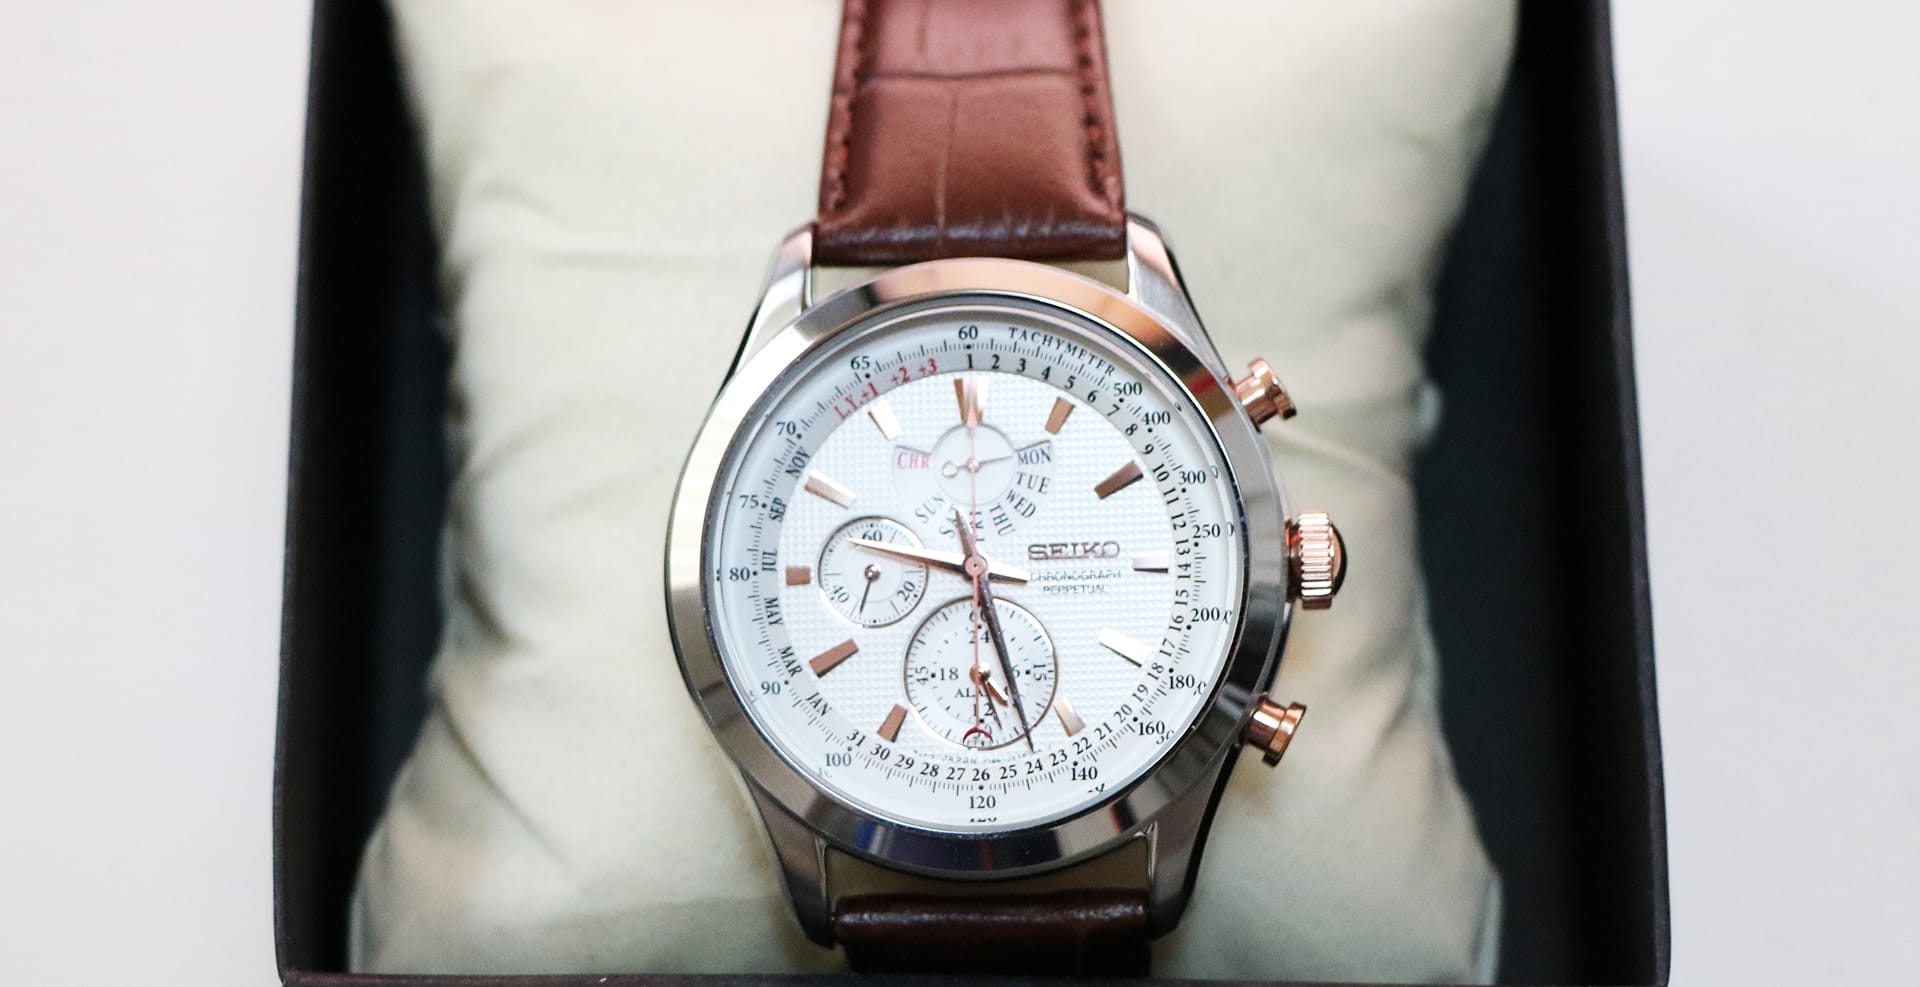 セイコー腕時計クロノグラフパーペチュアル Spc129p1 海外モデル を買ってみた パーペチャルの初期設定はクロノグラフ初心者には複雑でした ブルーレディ